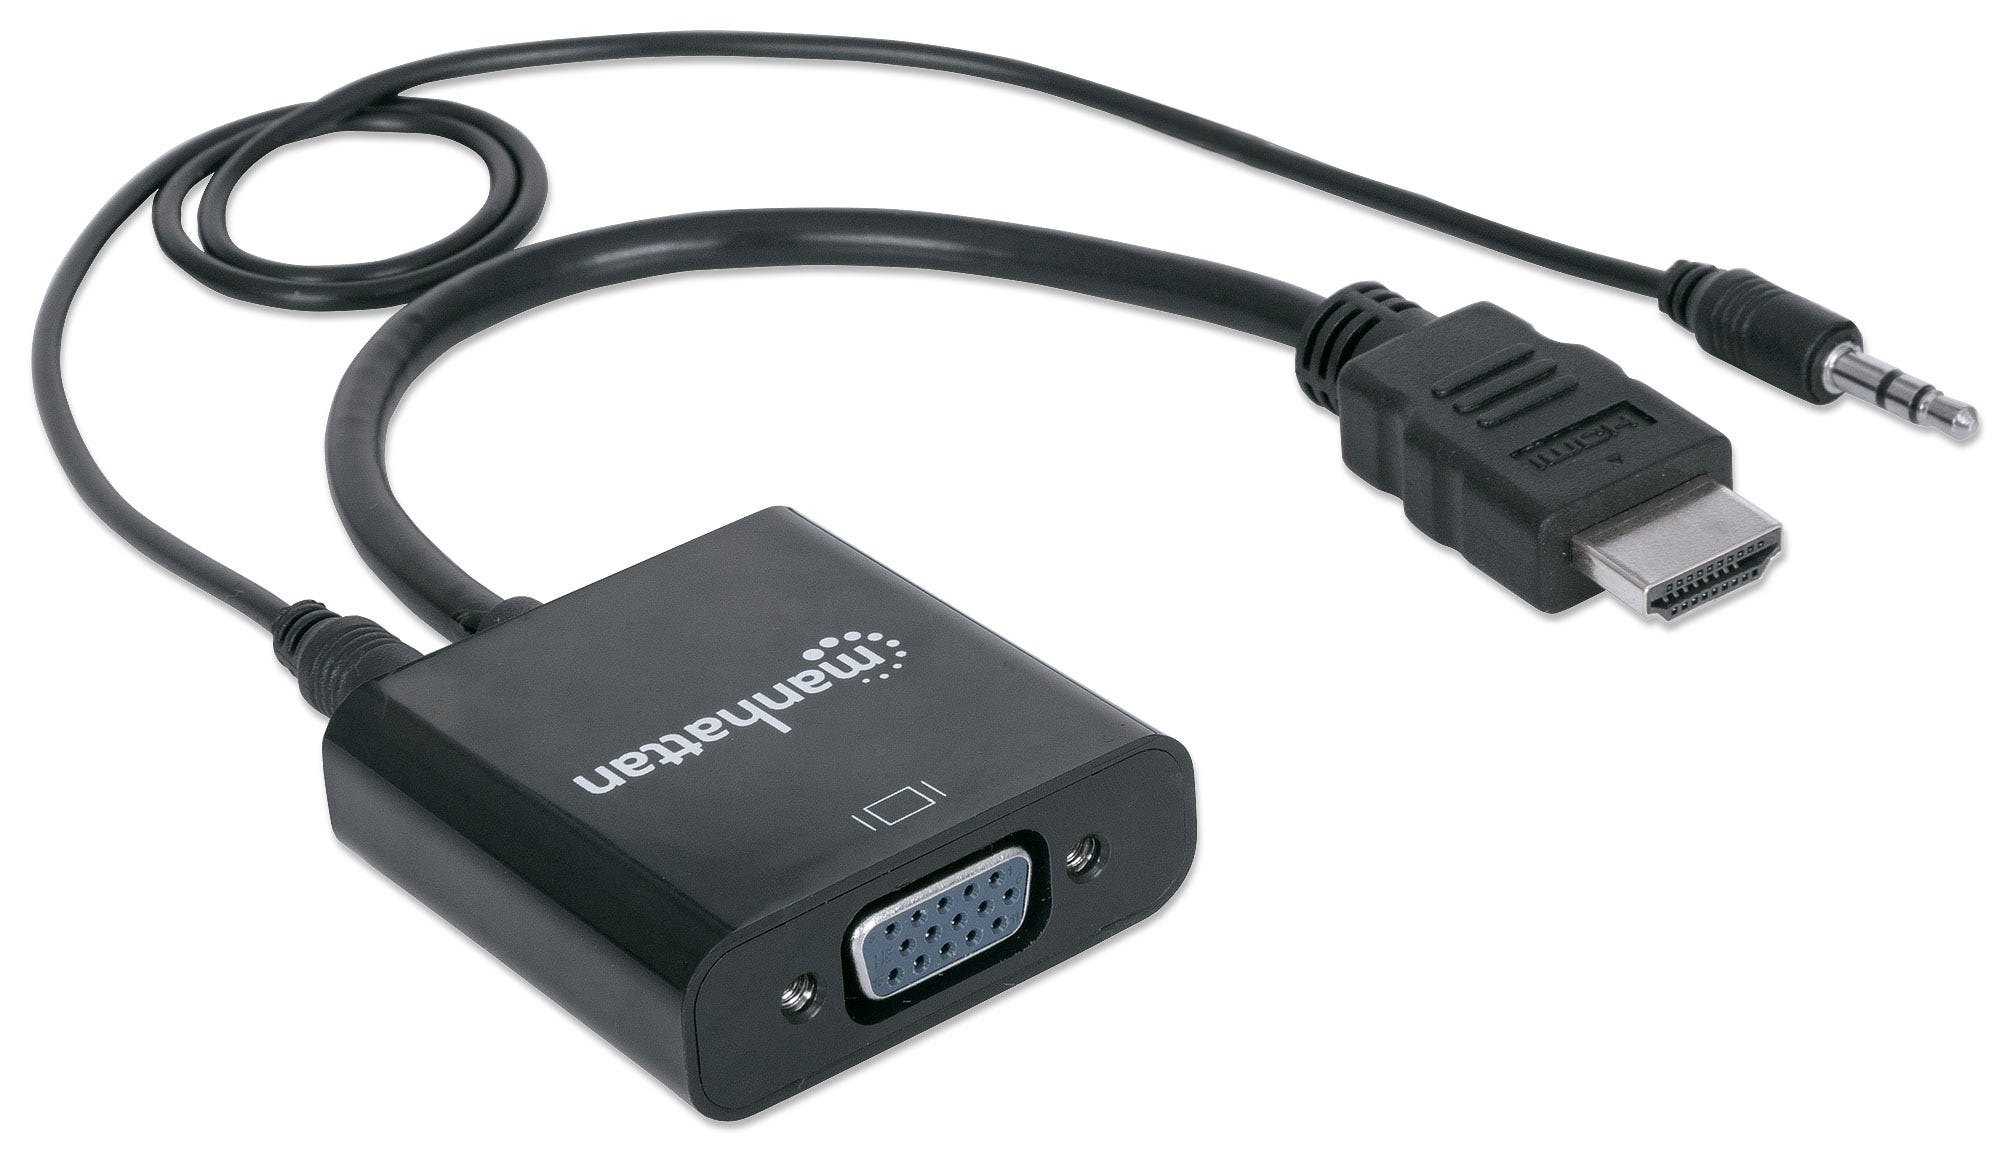 Manhattan HDMI auf VGA-Konverter, HDMI-Stecker auf VGA-Buchse, mit Audio, optionaler USB Micro-B-Stromport, schwarz - Video- / Audio-Adapter - HDMI (M)